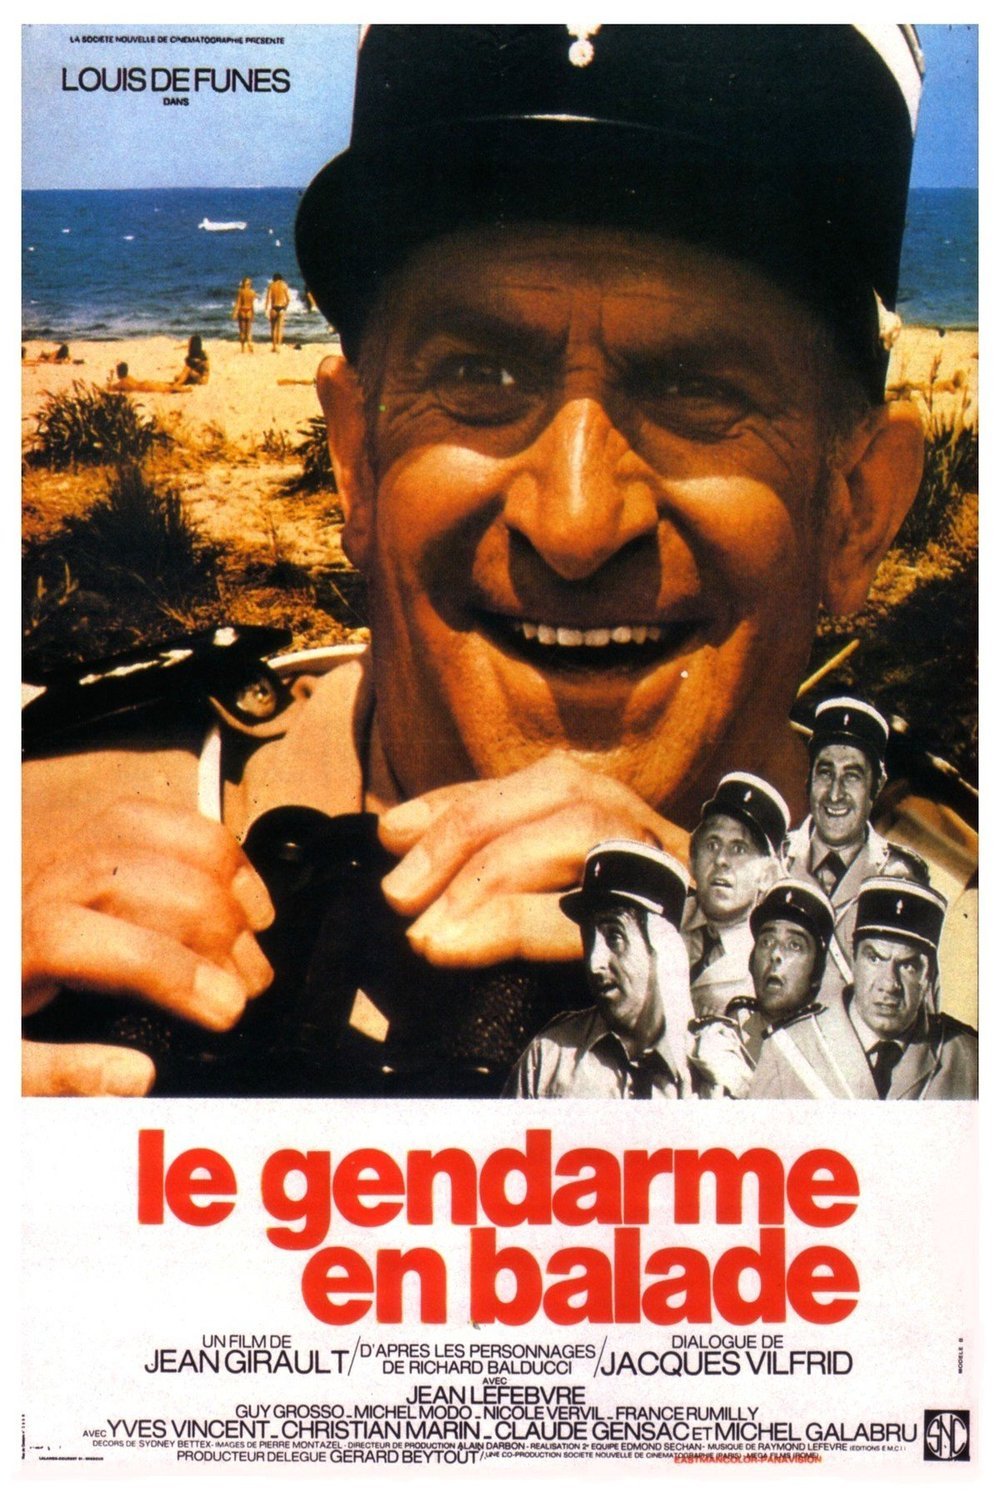 L'affiche du film Le gendarme en balade